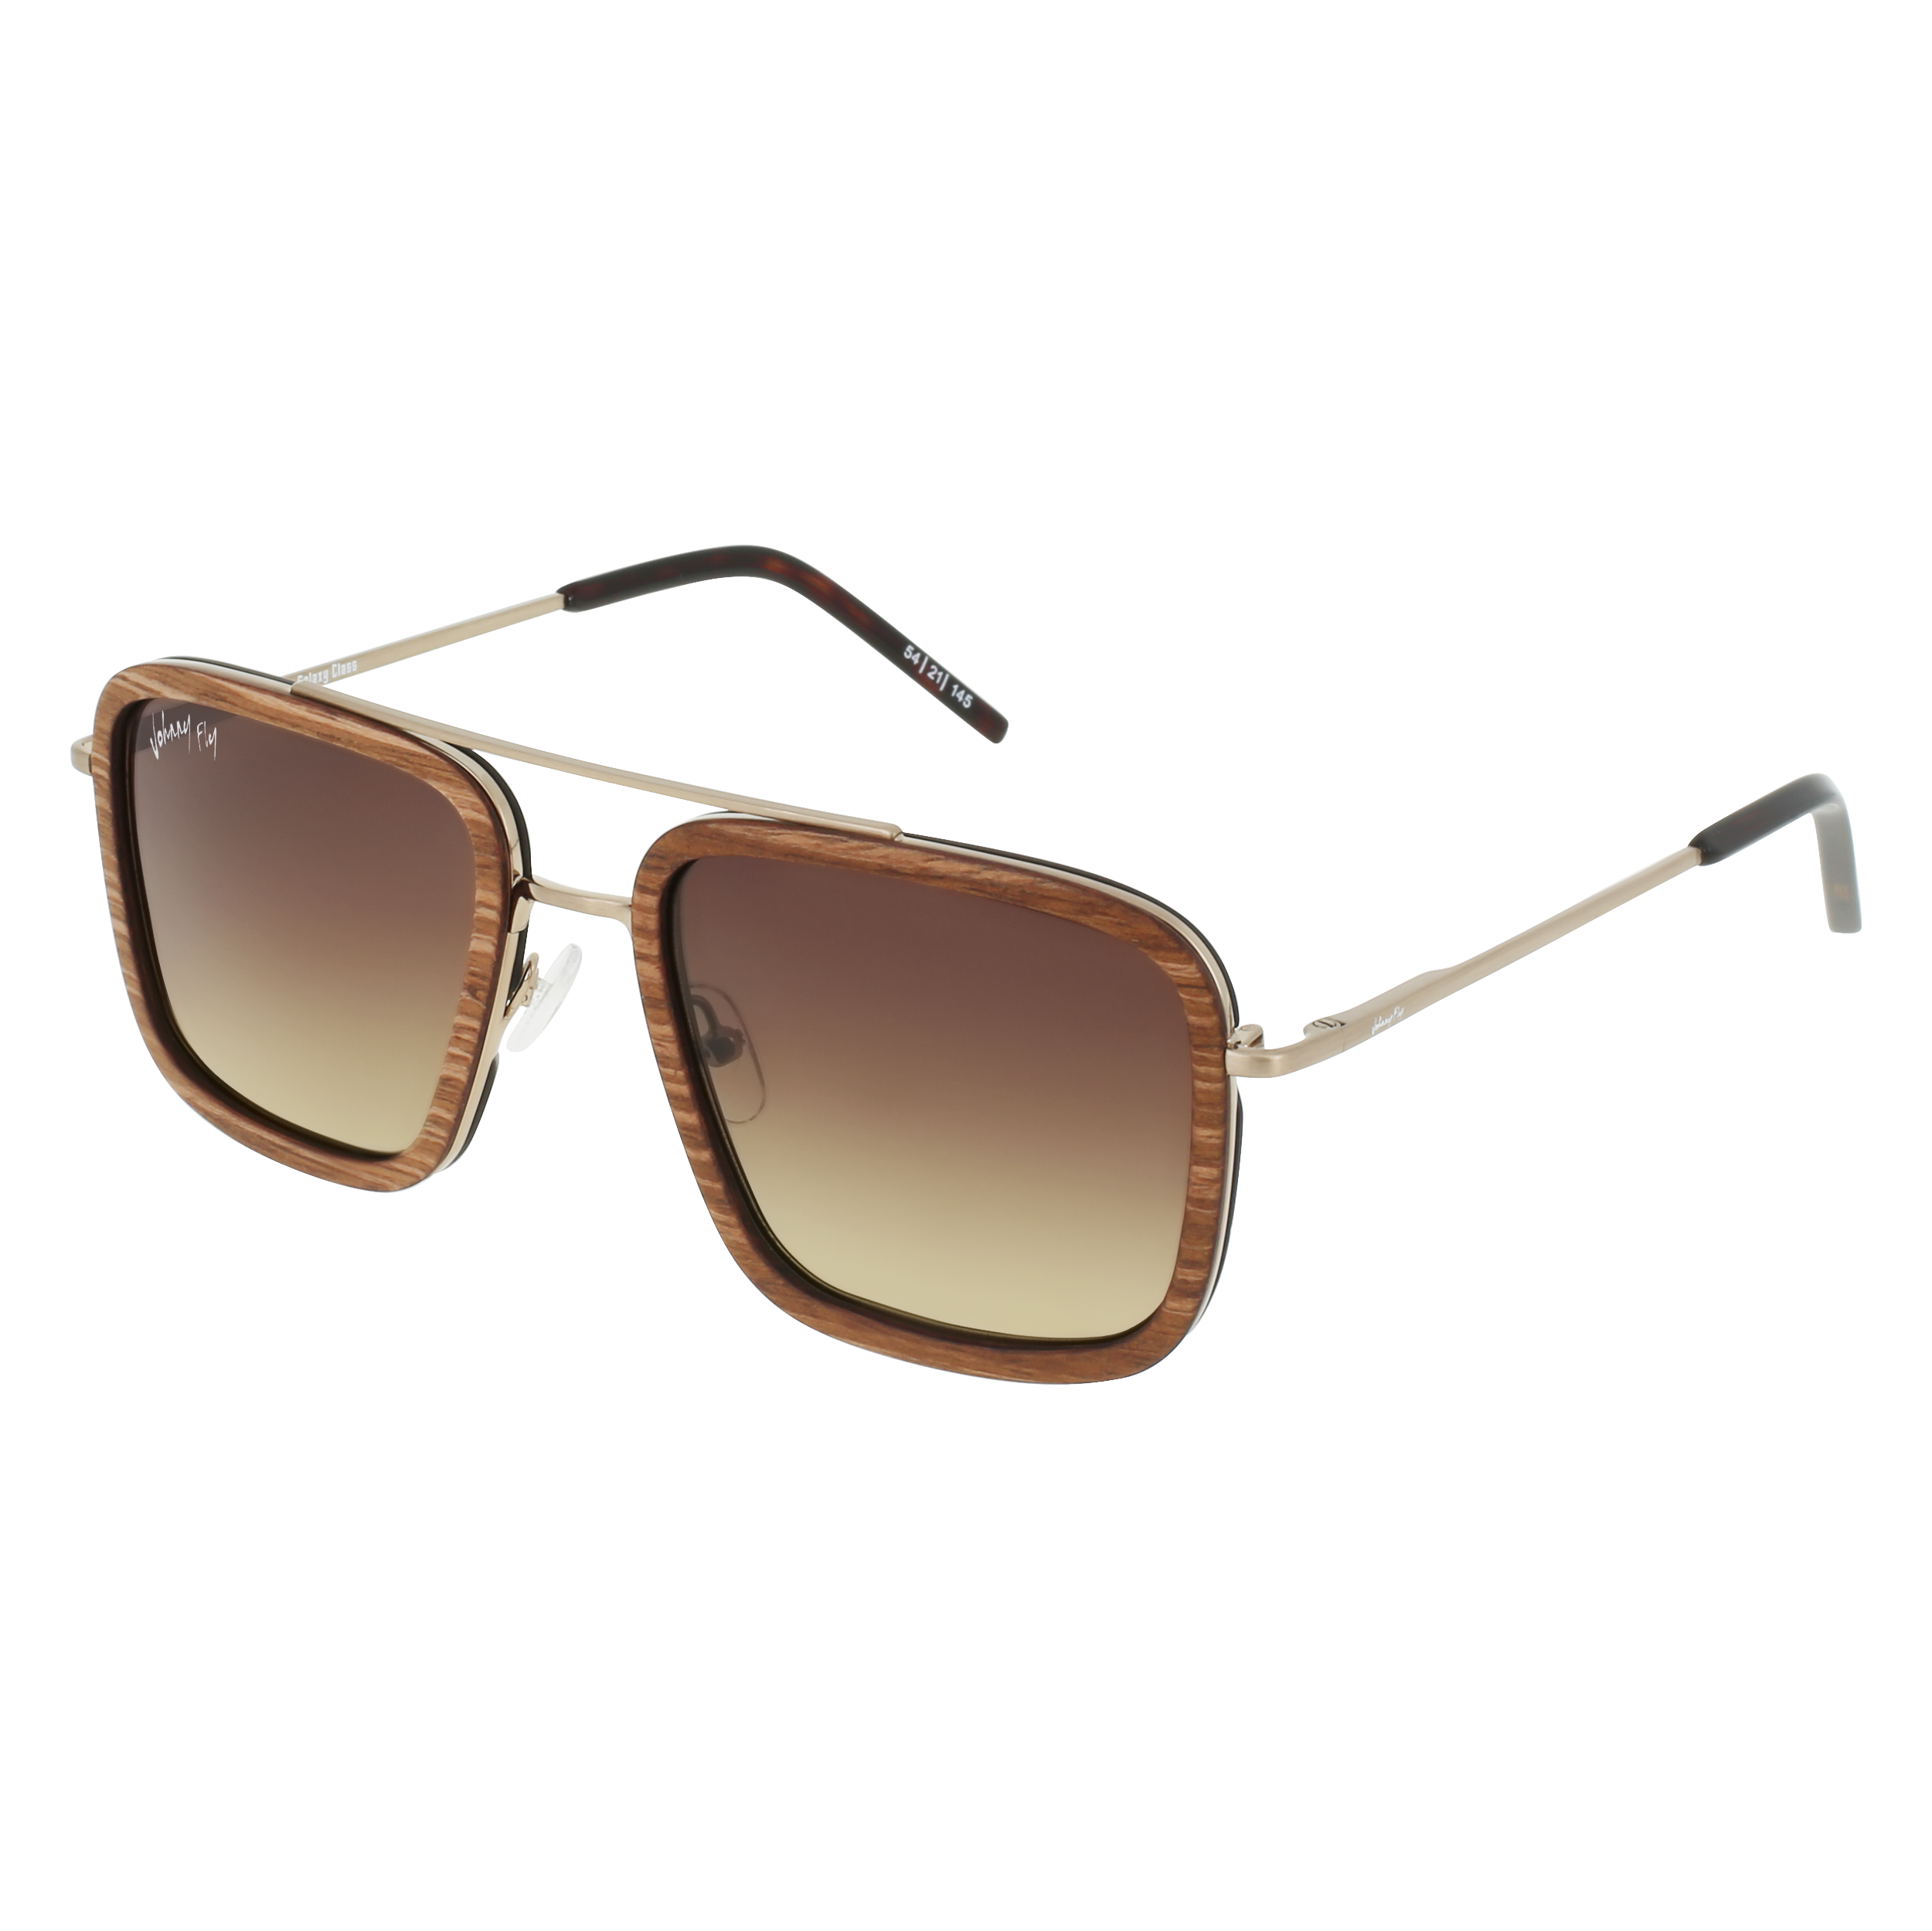 LAFORGE Sunglasses Frame - Brushed Gold- Johnny Fly | LAF-BGLD-POL-BGR | | 